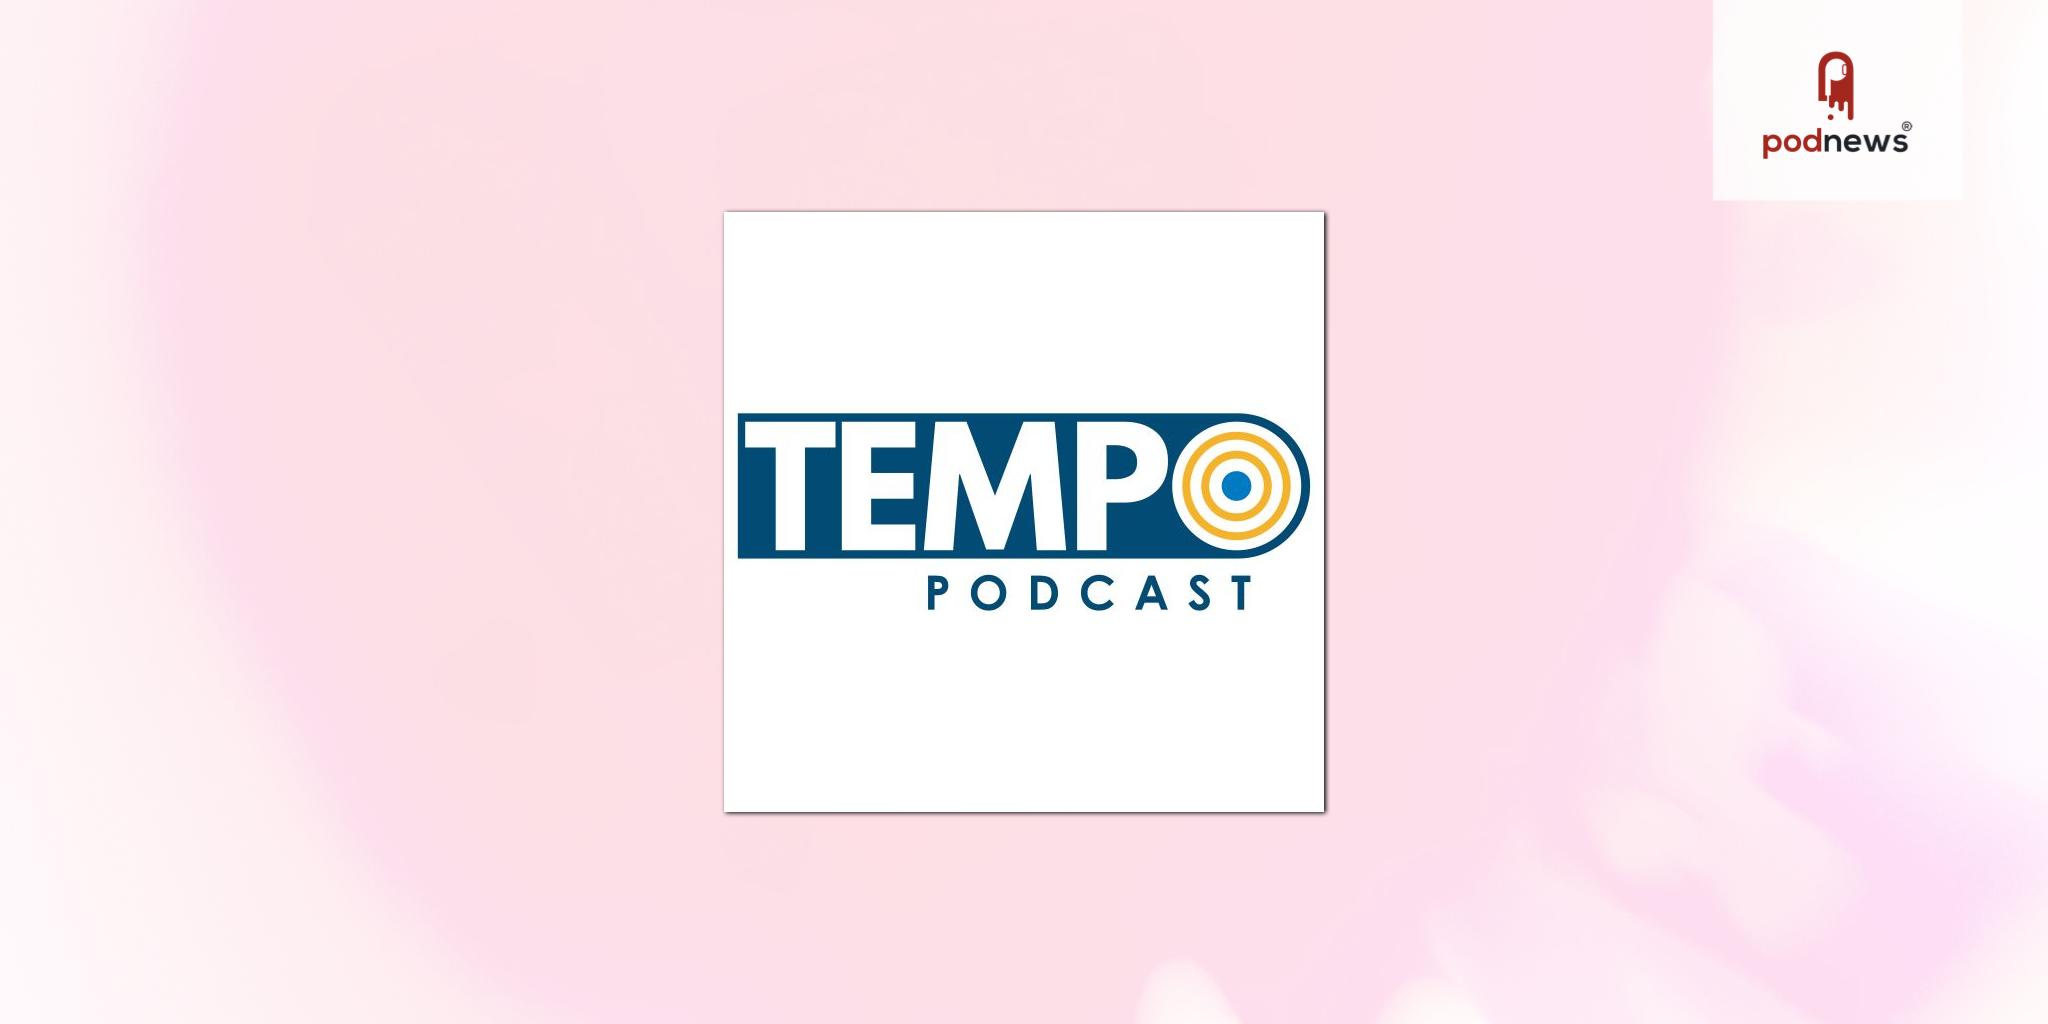 VanillaSoft Launches TEMPO Podcast